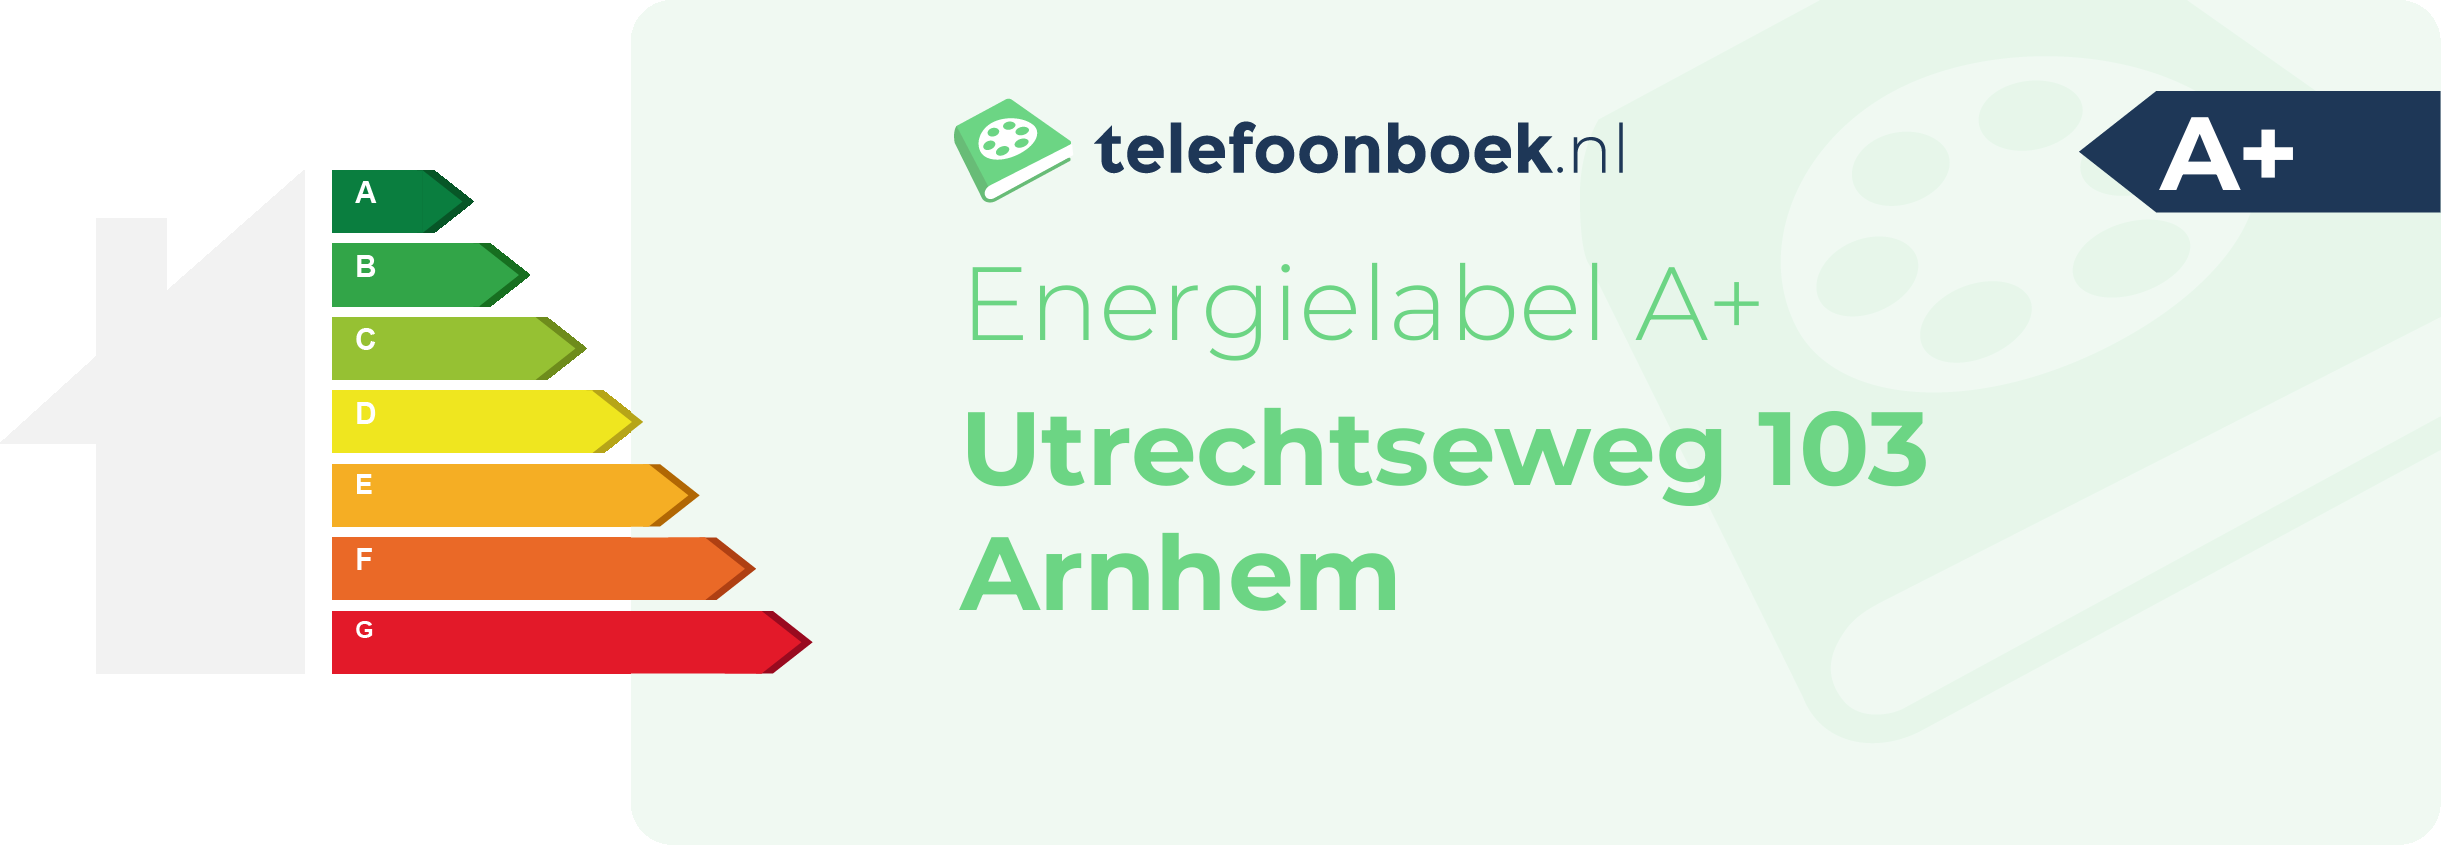 Energielabel Utrechtseweg 103 Arnhem